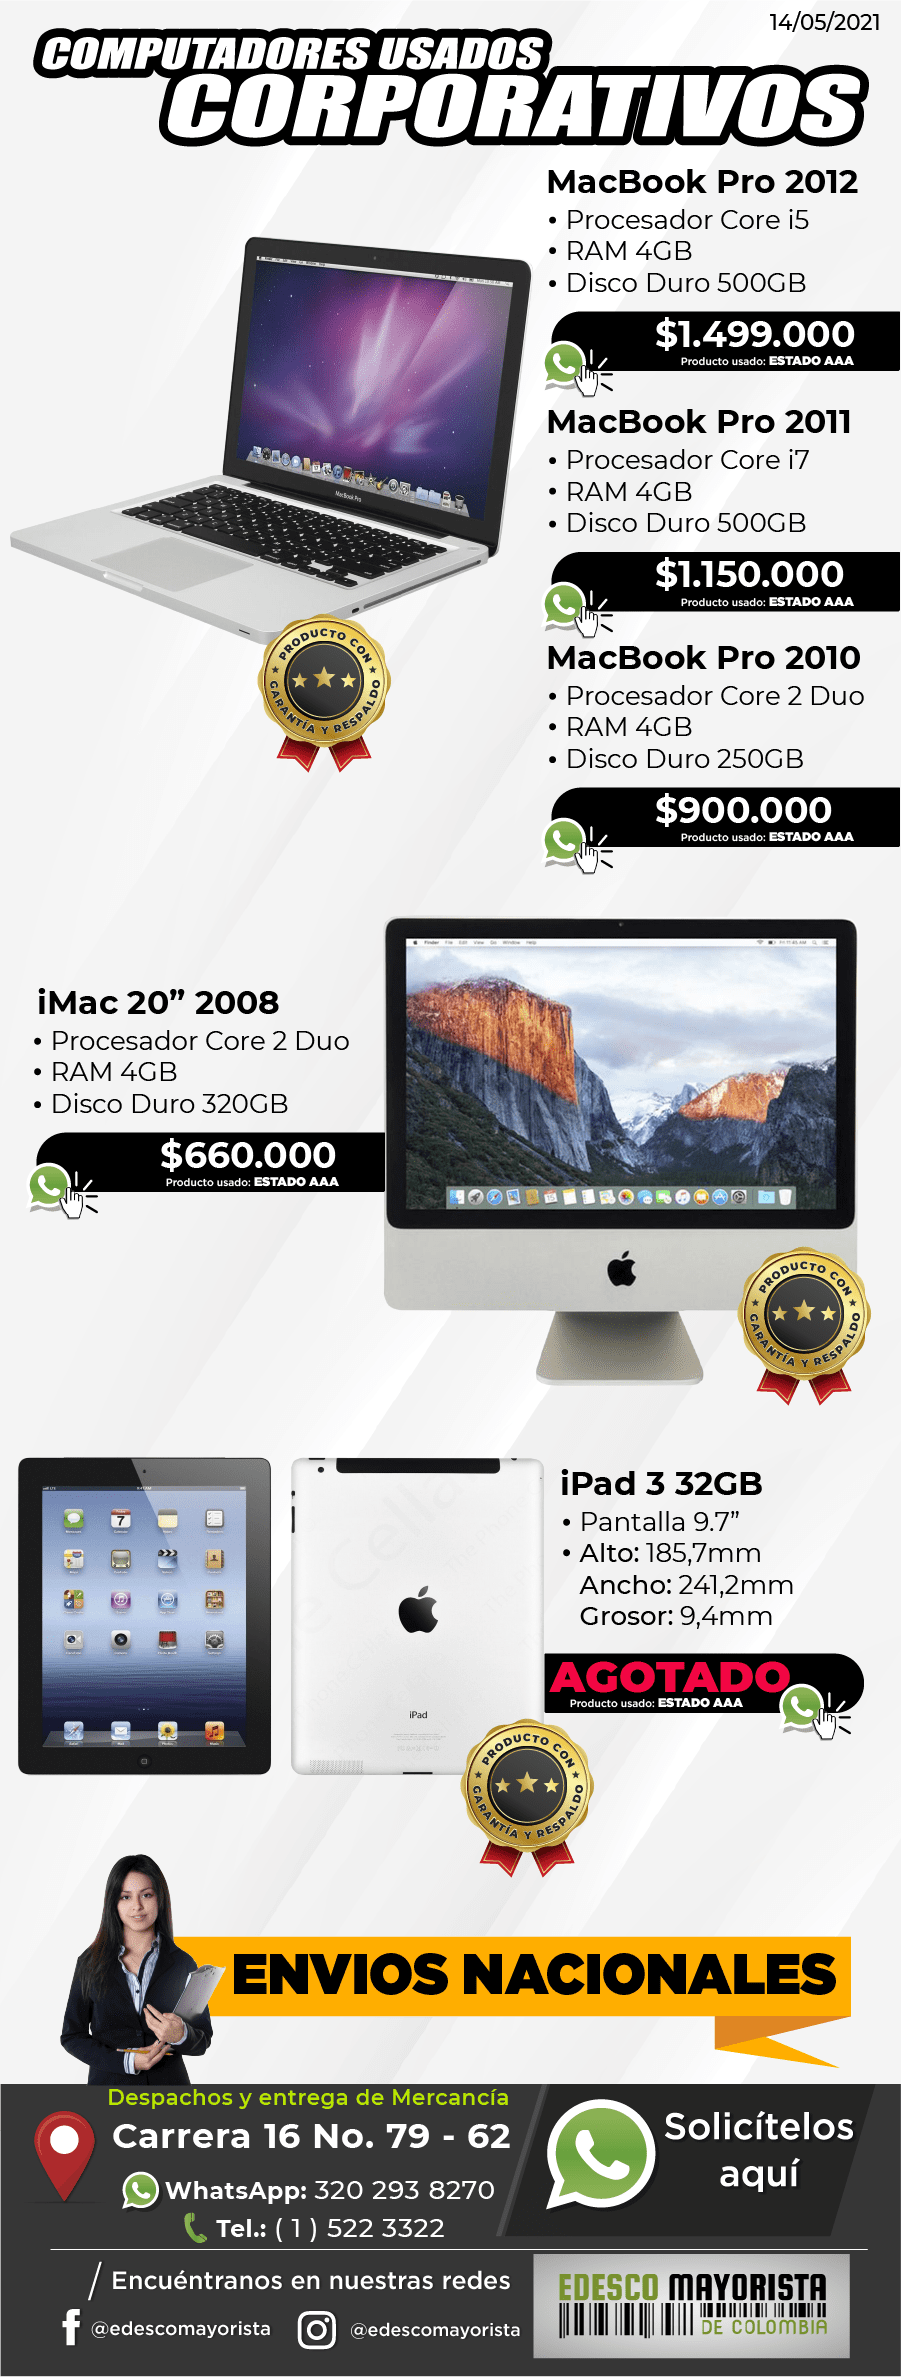 Macbook Pro, iMac y iPad 3 32GB